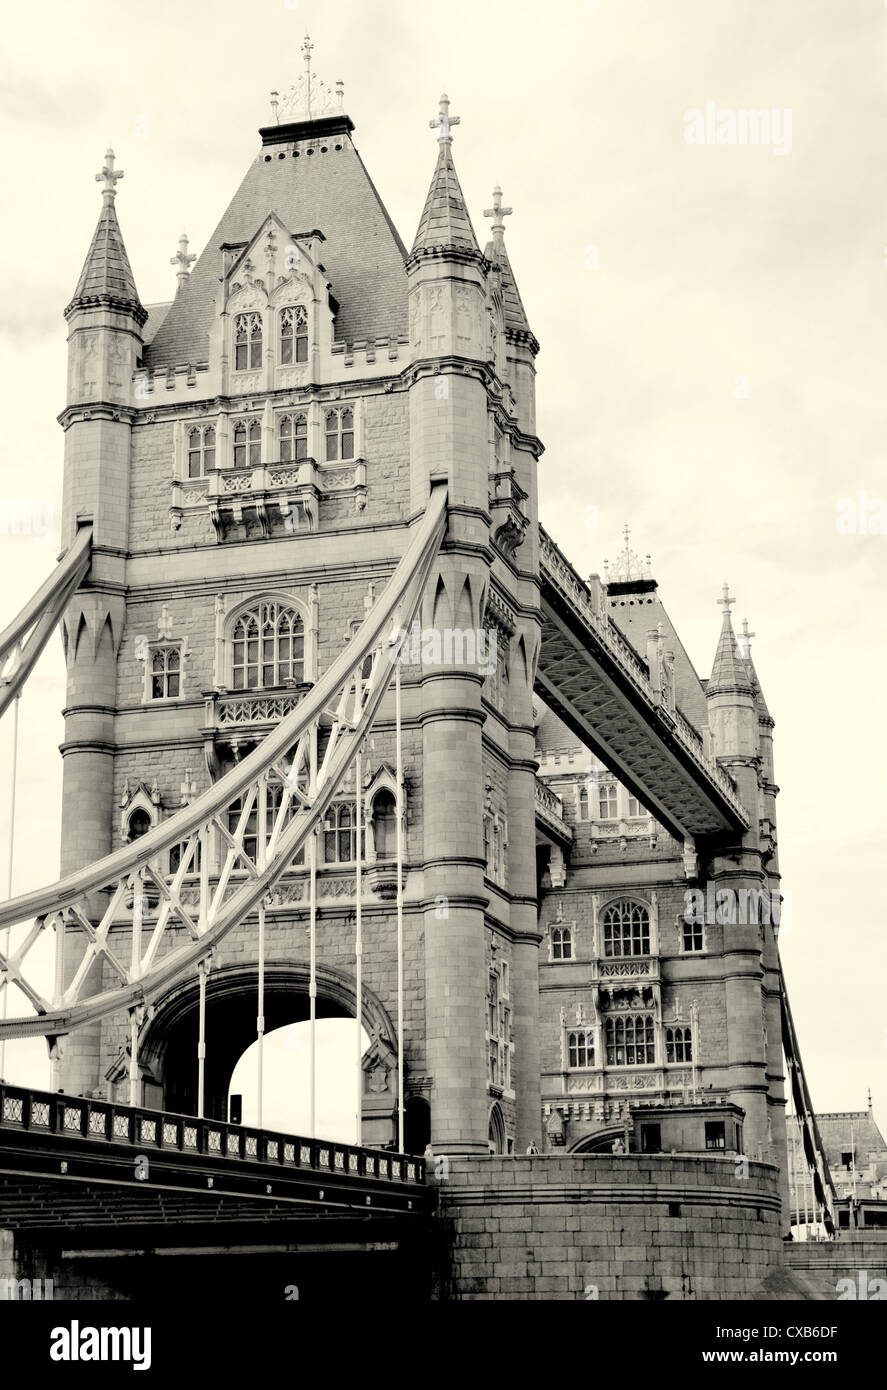 Imagen en blanco y negro artística del puente de la torre en el centro de Londres en un día soleado Foto de stock